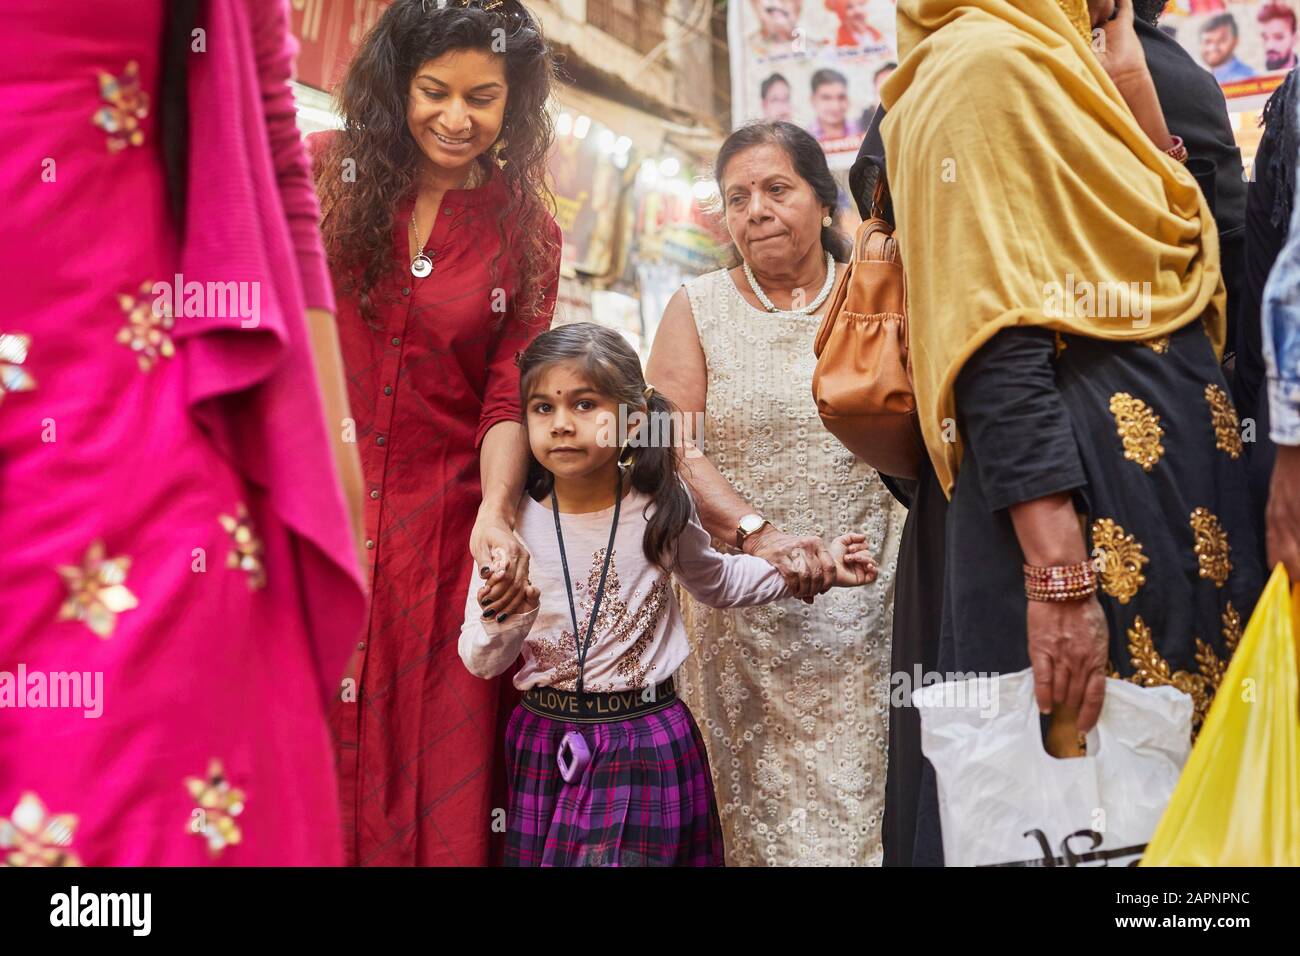 Family of three shopping at bazaar Stock Photo